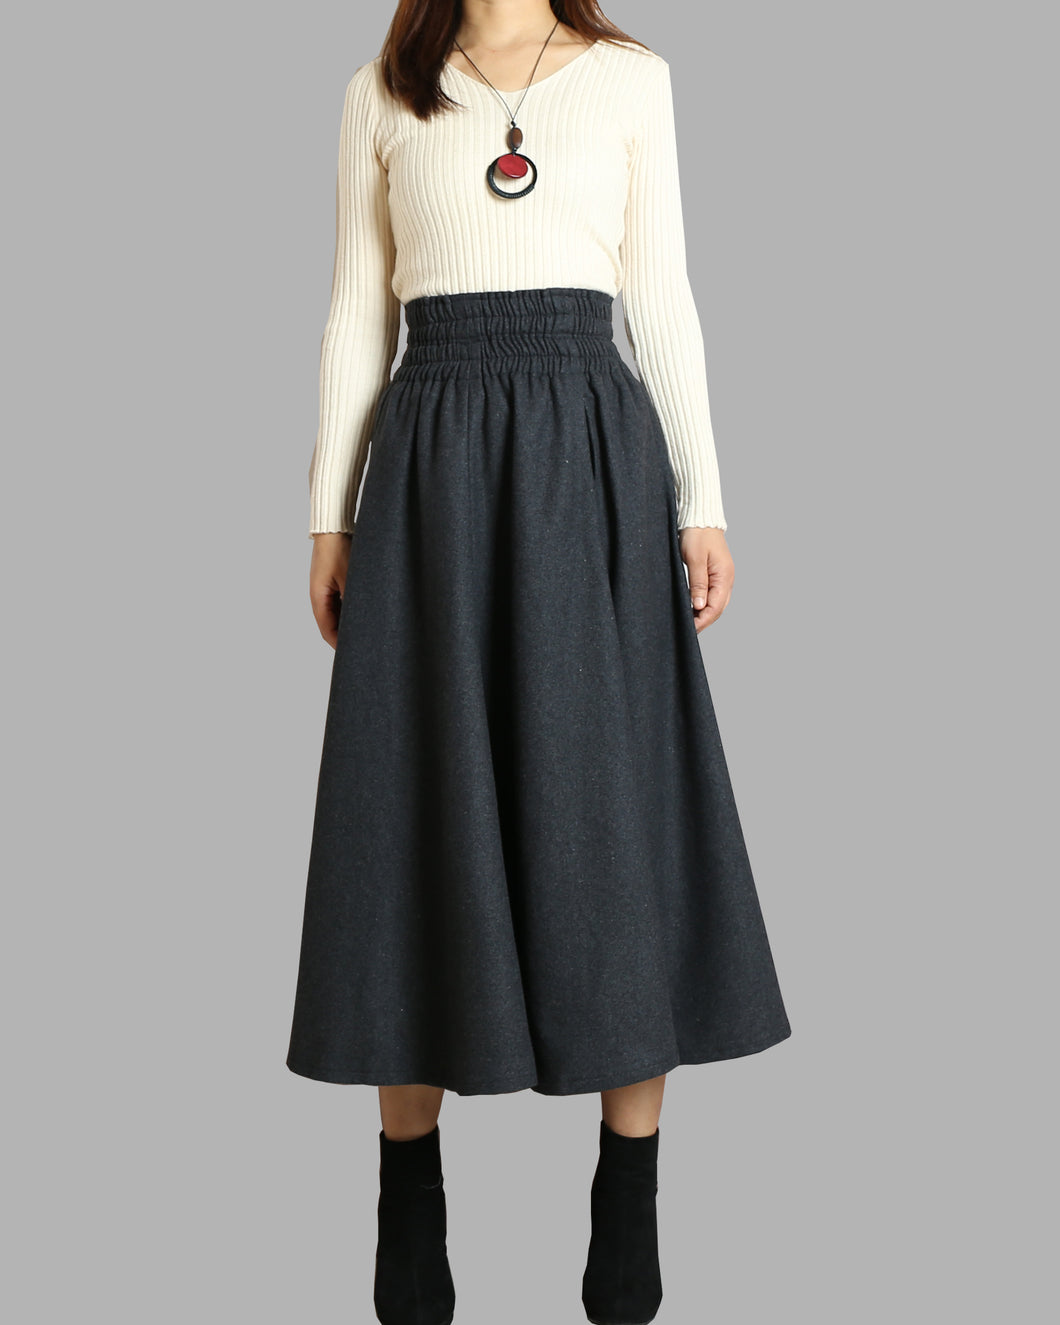 Women's wool skirt/elastic waist skirt/winter skirt/flared skirt/maxi skirt/ankle length skirt(Q1099)